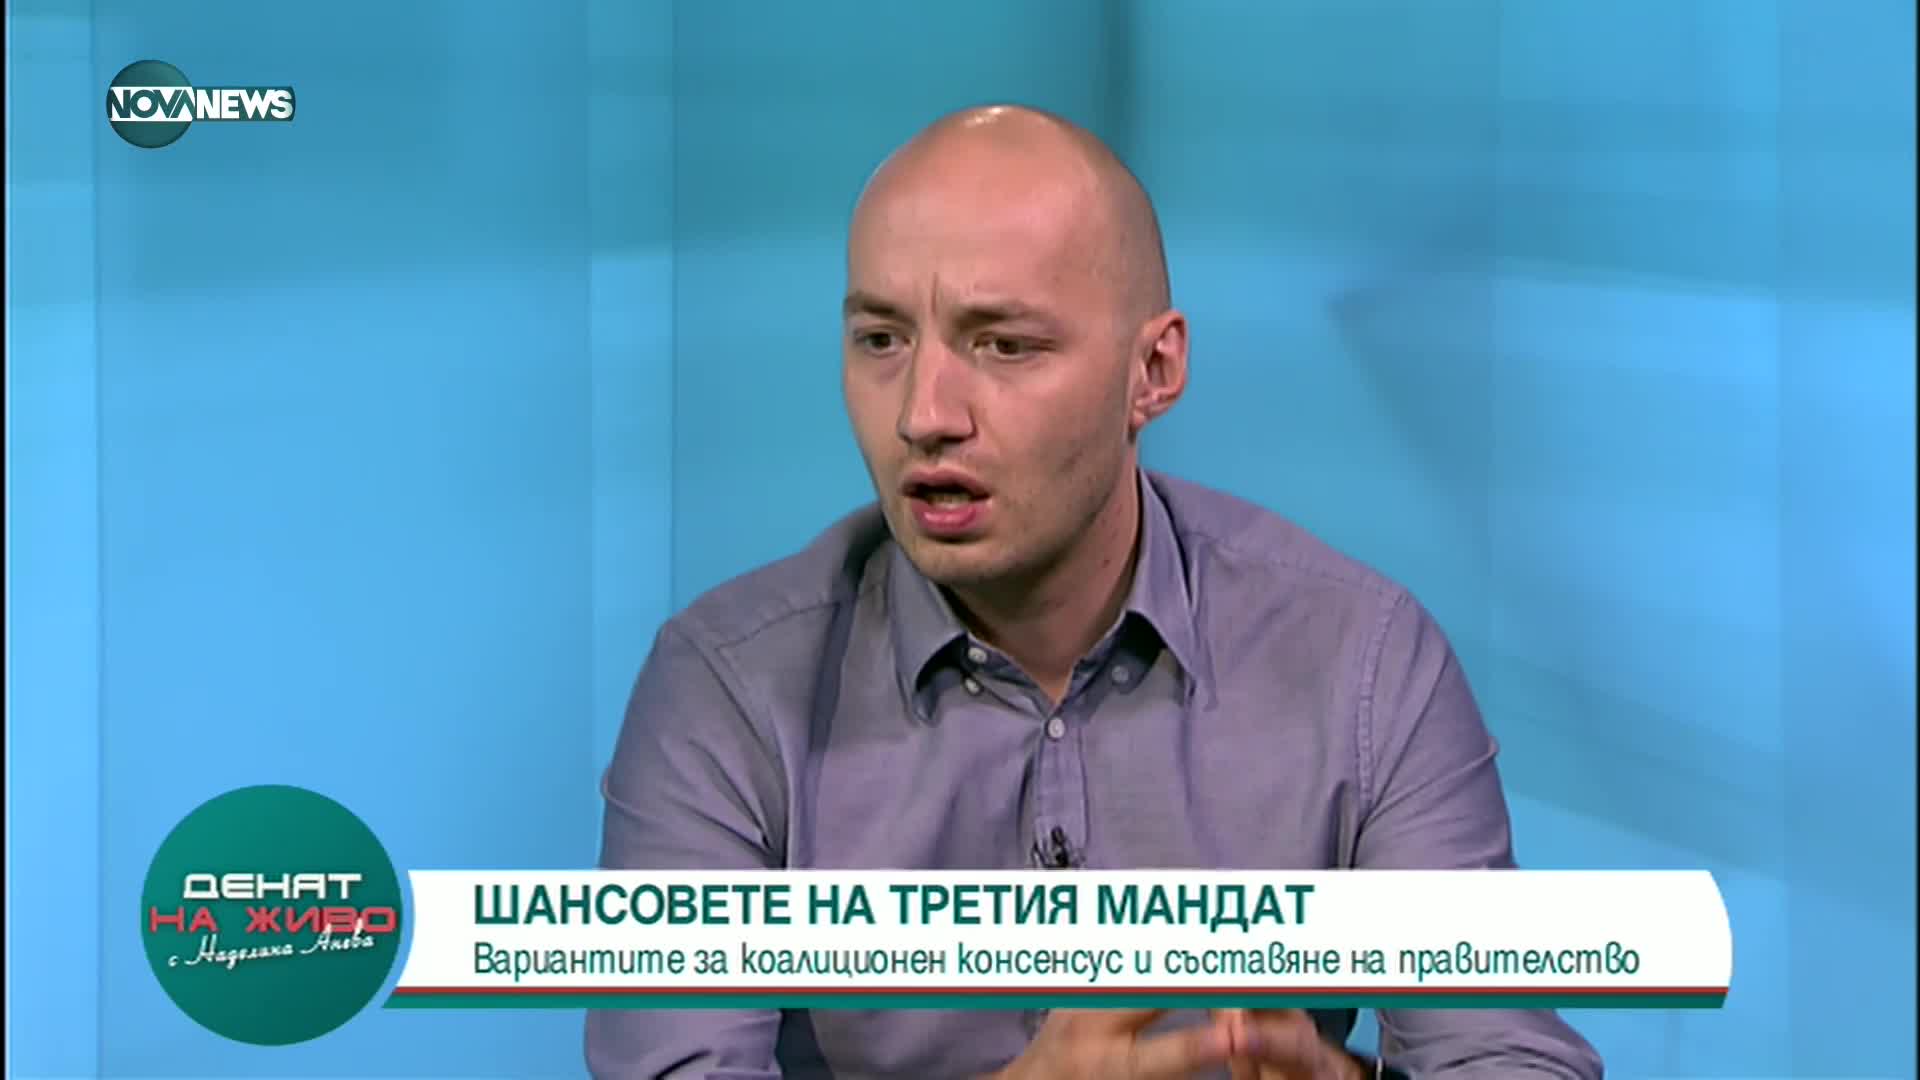 Димитър Ганев: Кабинет извън четворната коалиция, която имахме, е невъзможен в това НС